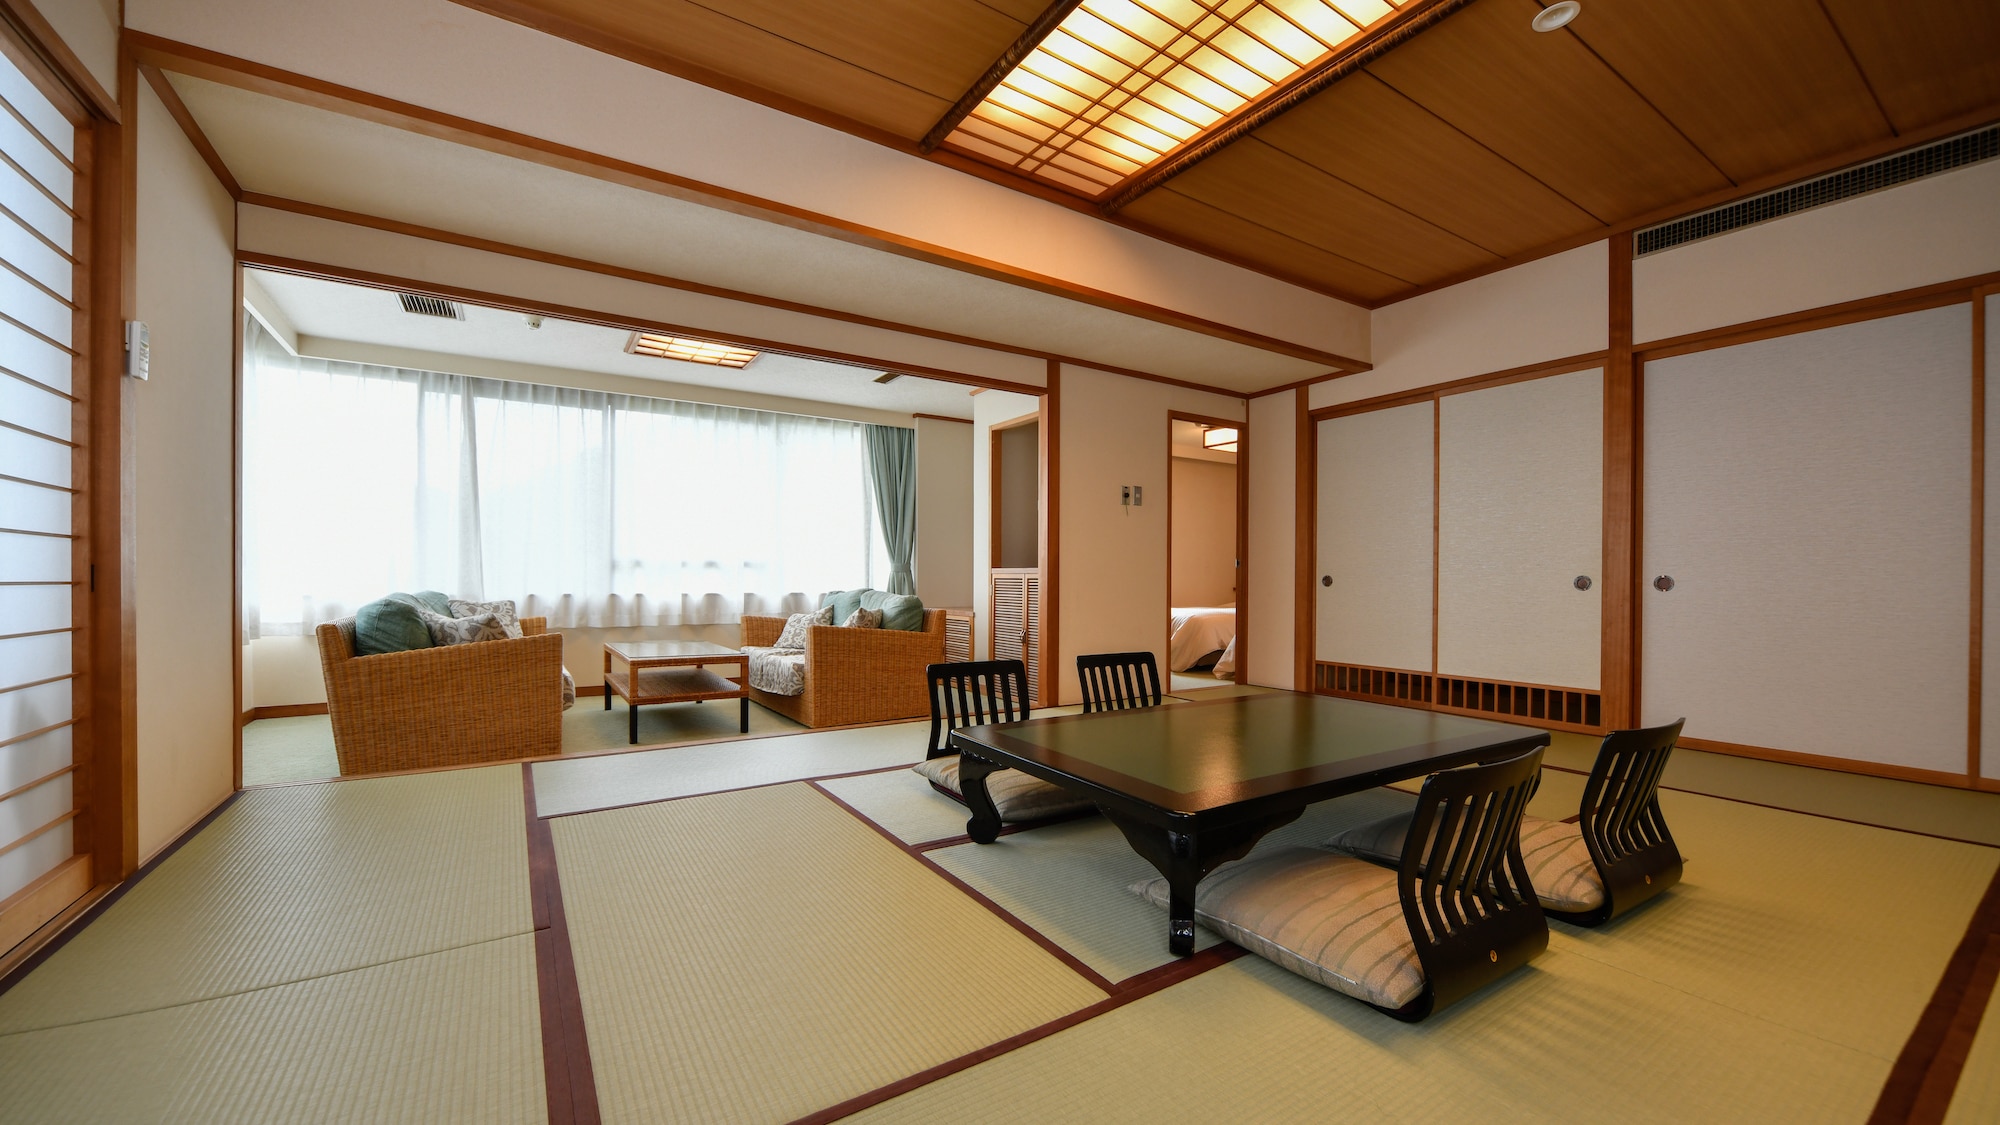 Yamabiko no Ma（豪華日式和西式客房） 這個房間非常適合第 2 和第 3 代旅行。